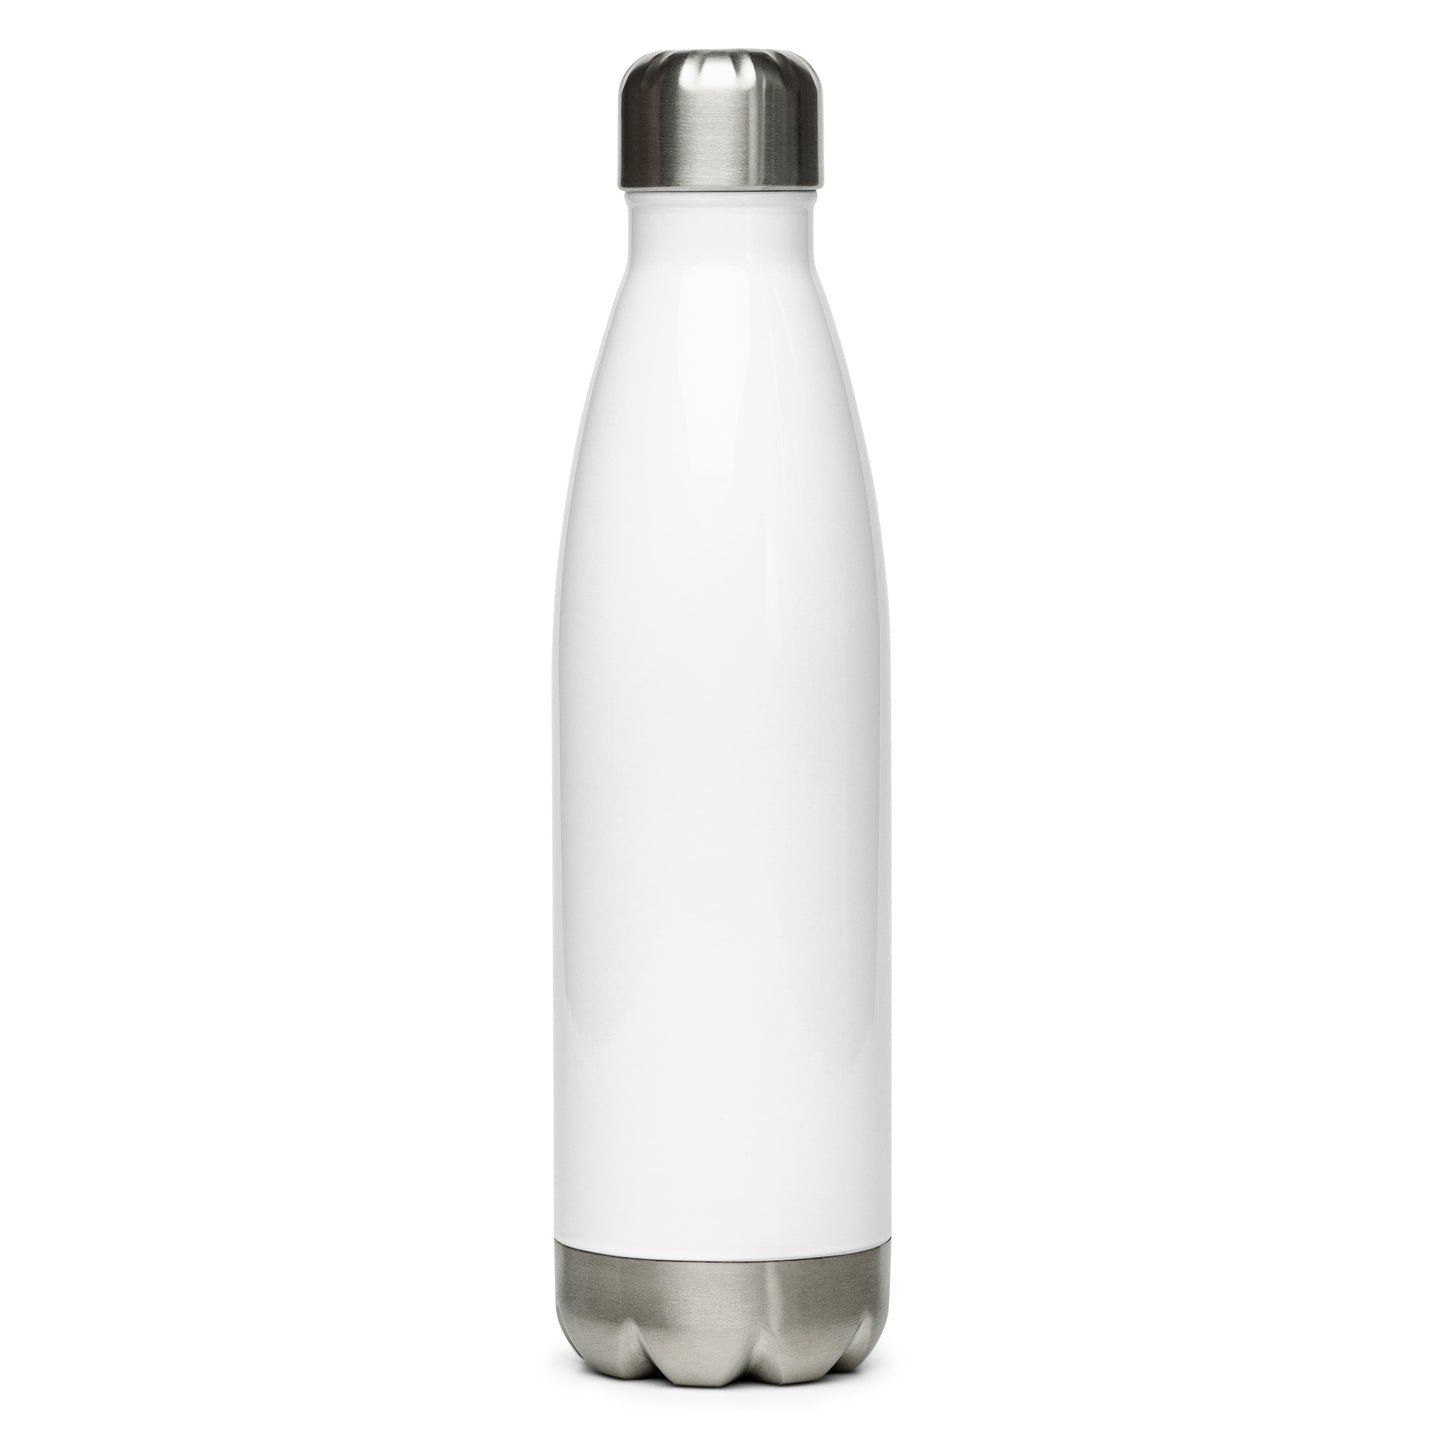 SBB Stainless Steel Water Bottle